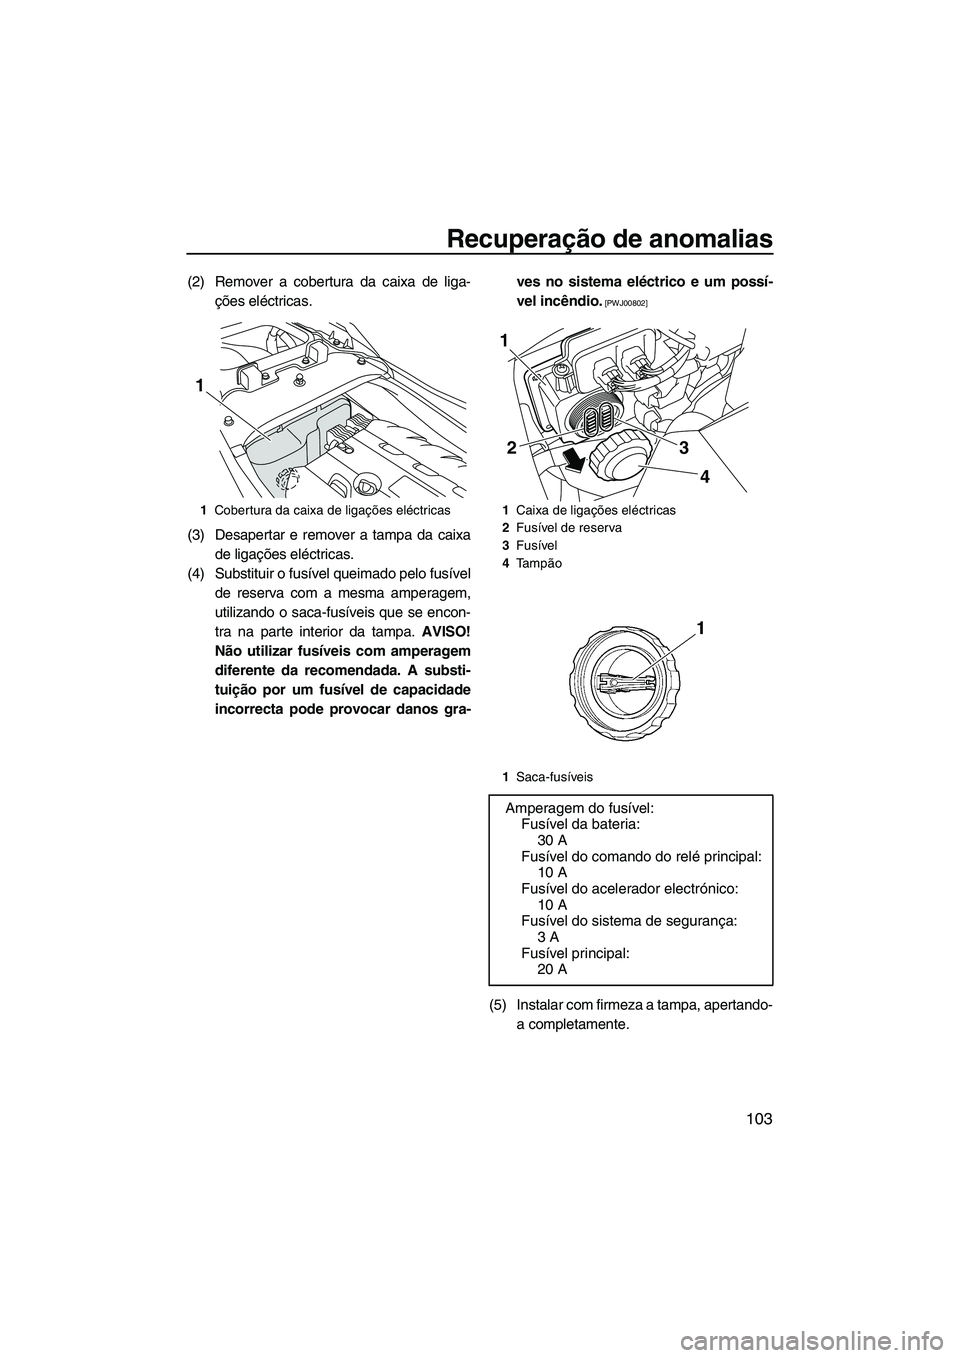 YAMAHA FZS 2010  Manual de utilização (in Portuguese) Recuperação de anomalias
103
(2) Remover a cobertura da caixa de liga-
ções eléctricas.
(3) Desapertar e remover a tampa da caixa
de ligações eléctricas.
(4) Substituir o fusível queimado pel